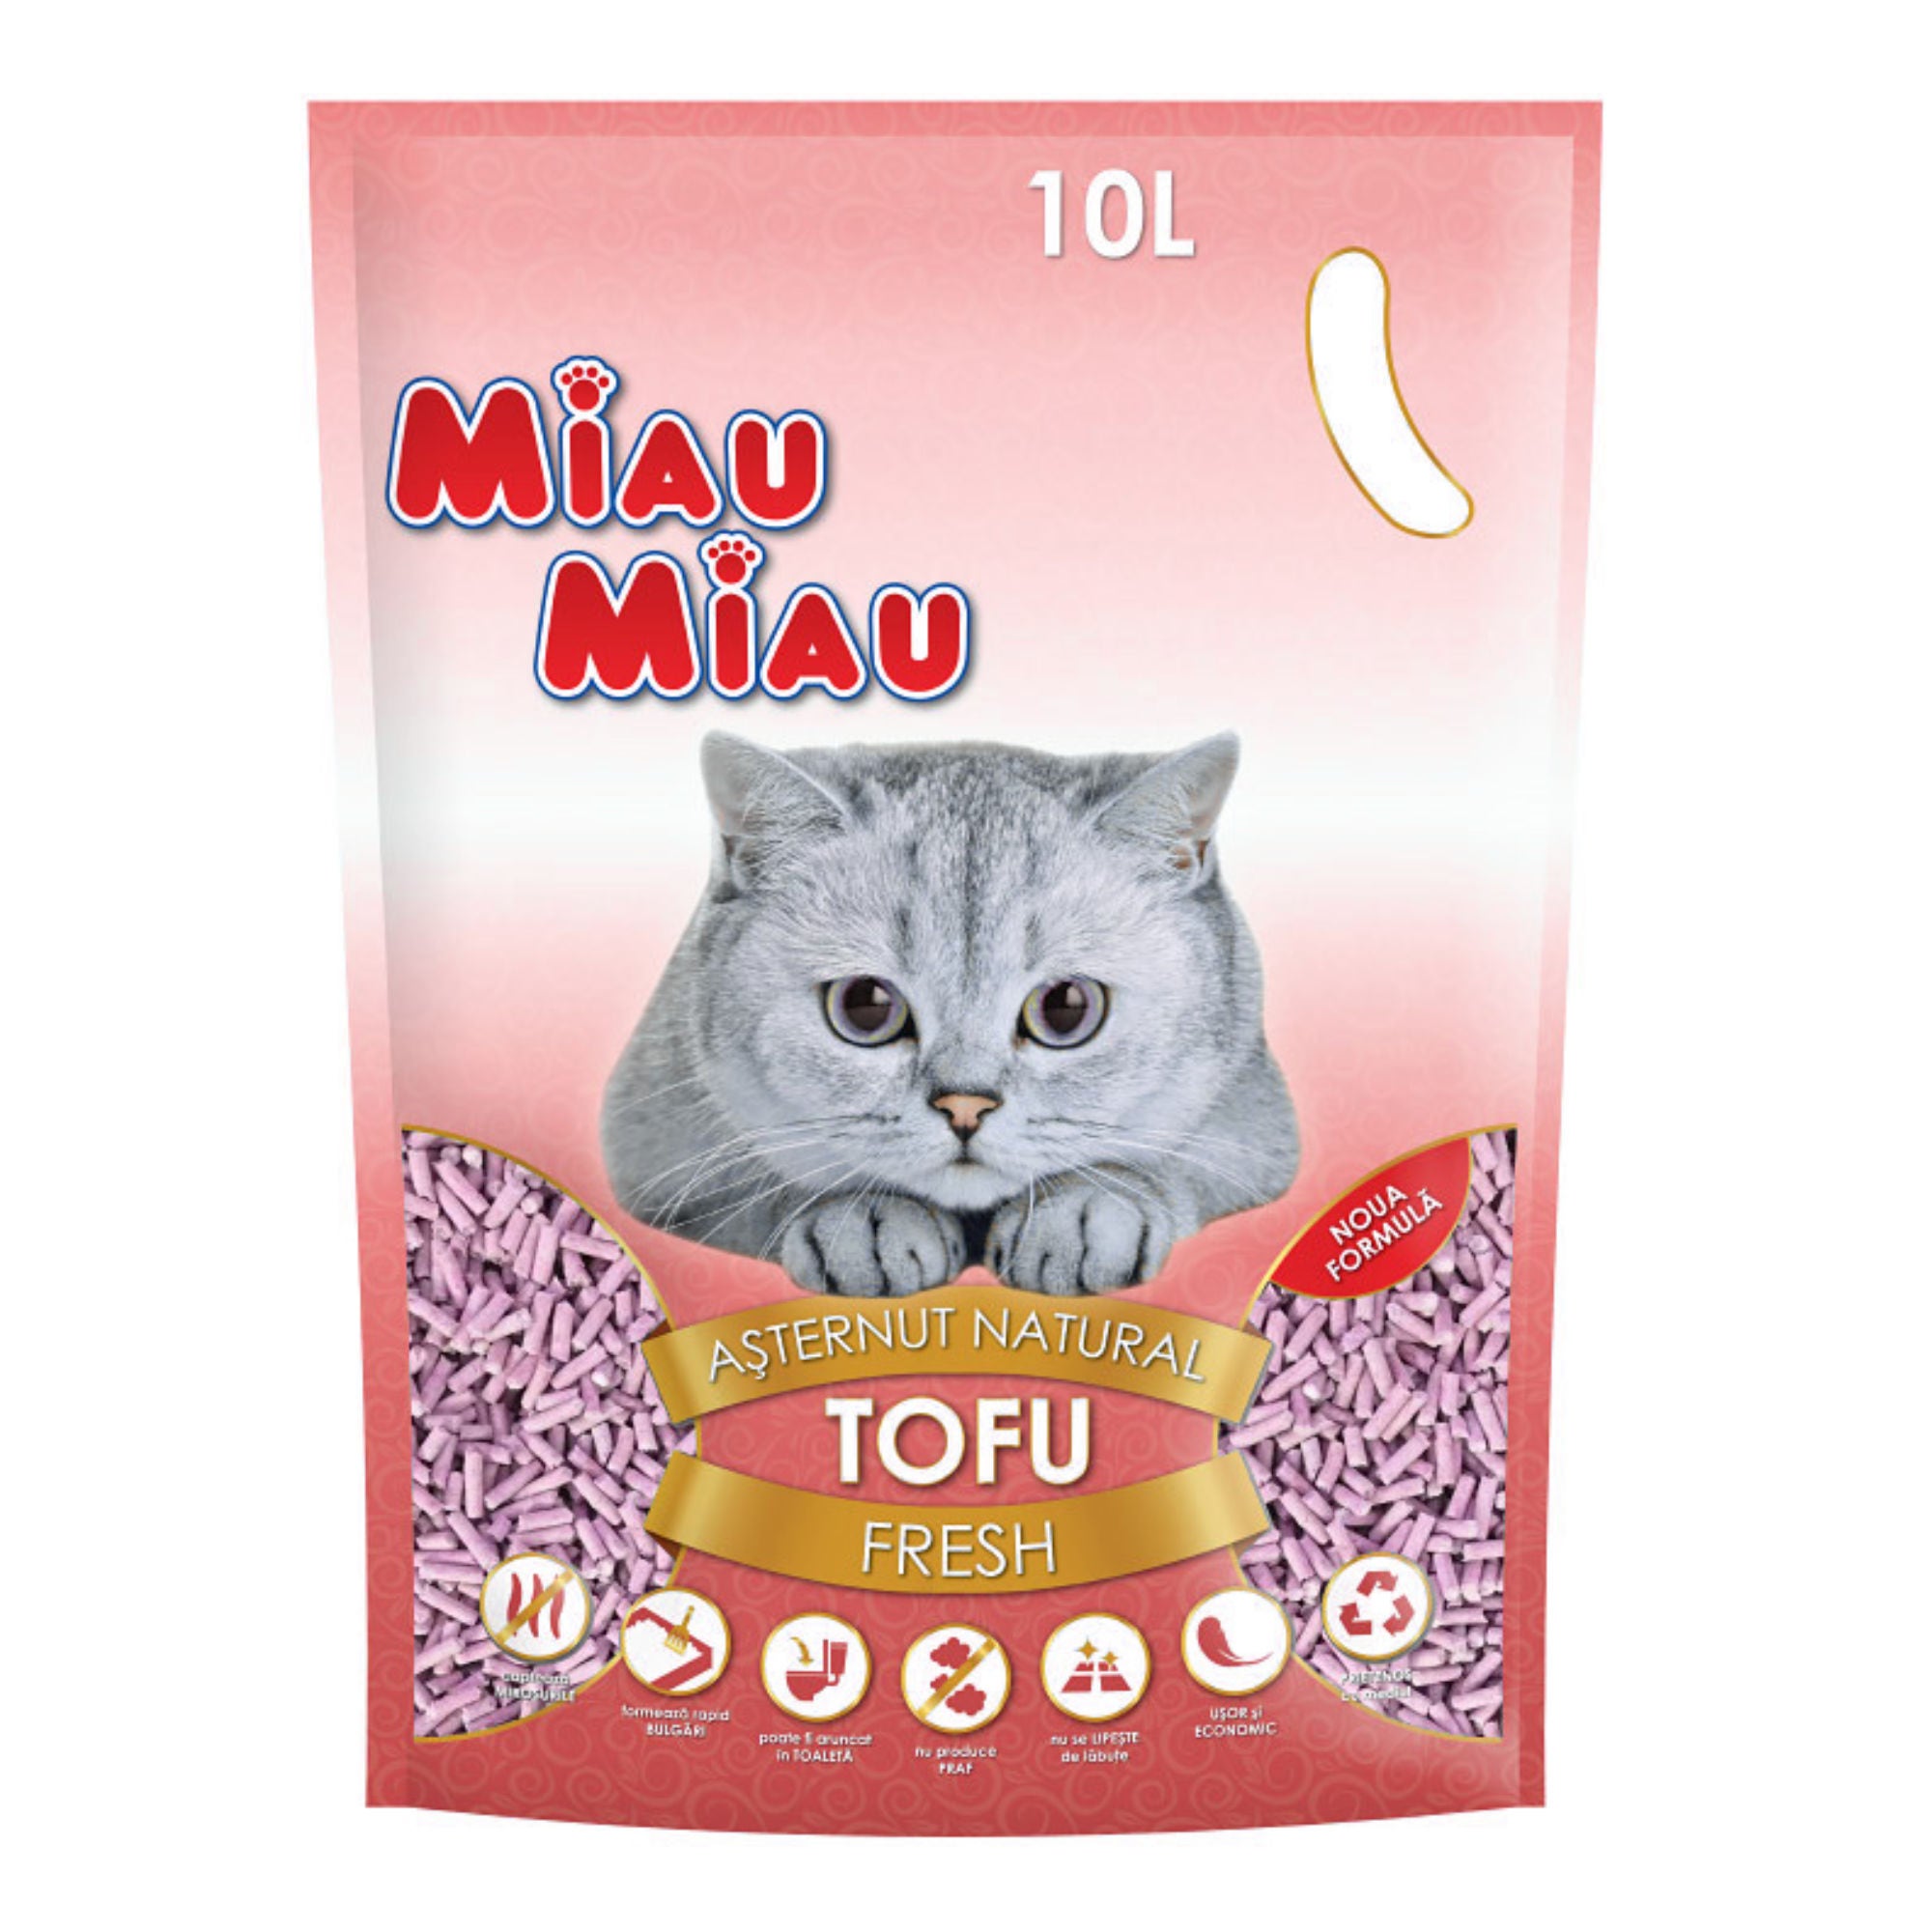 Asternut tofu Fresh, Miau Miau, pentru pisici, 10L